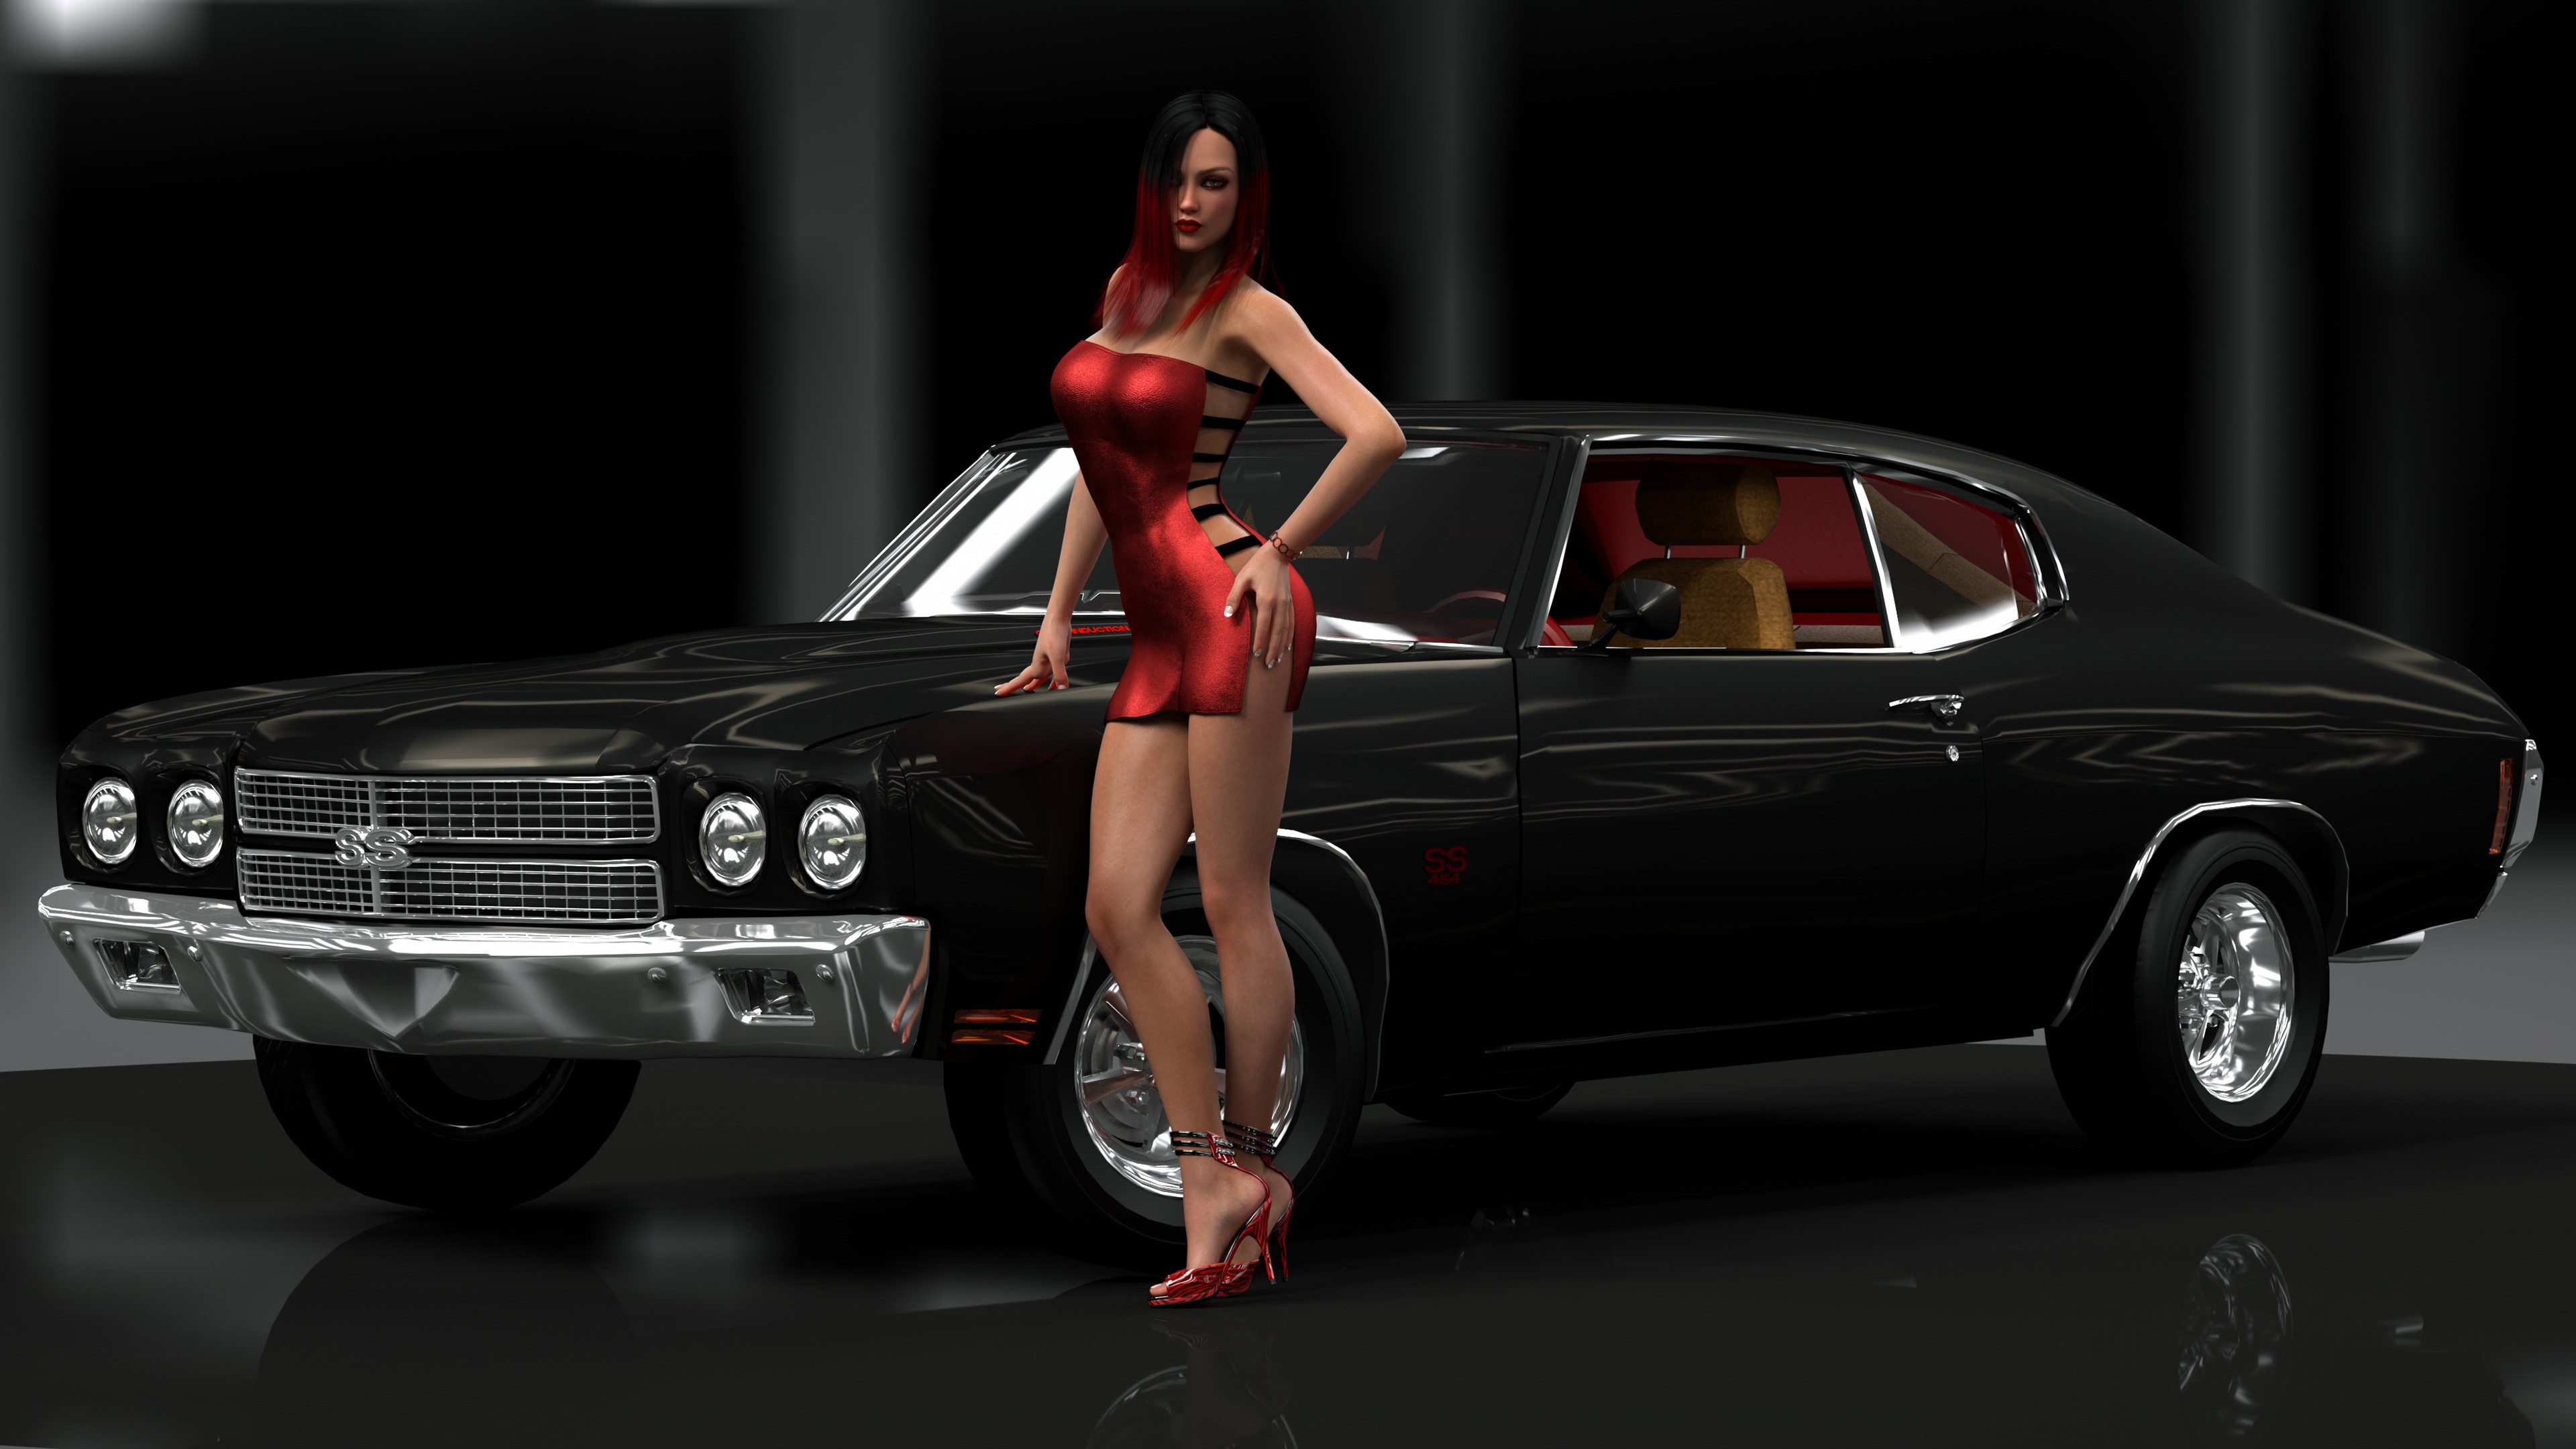 Wallpaper 3d Girl, Red Hair, Skirt, Car - Muscle Car , HD Wallpaper & Backgrounds